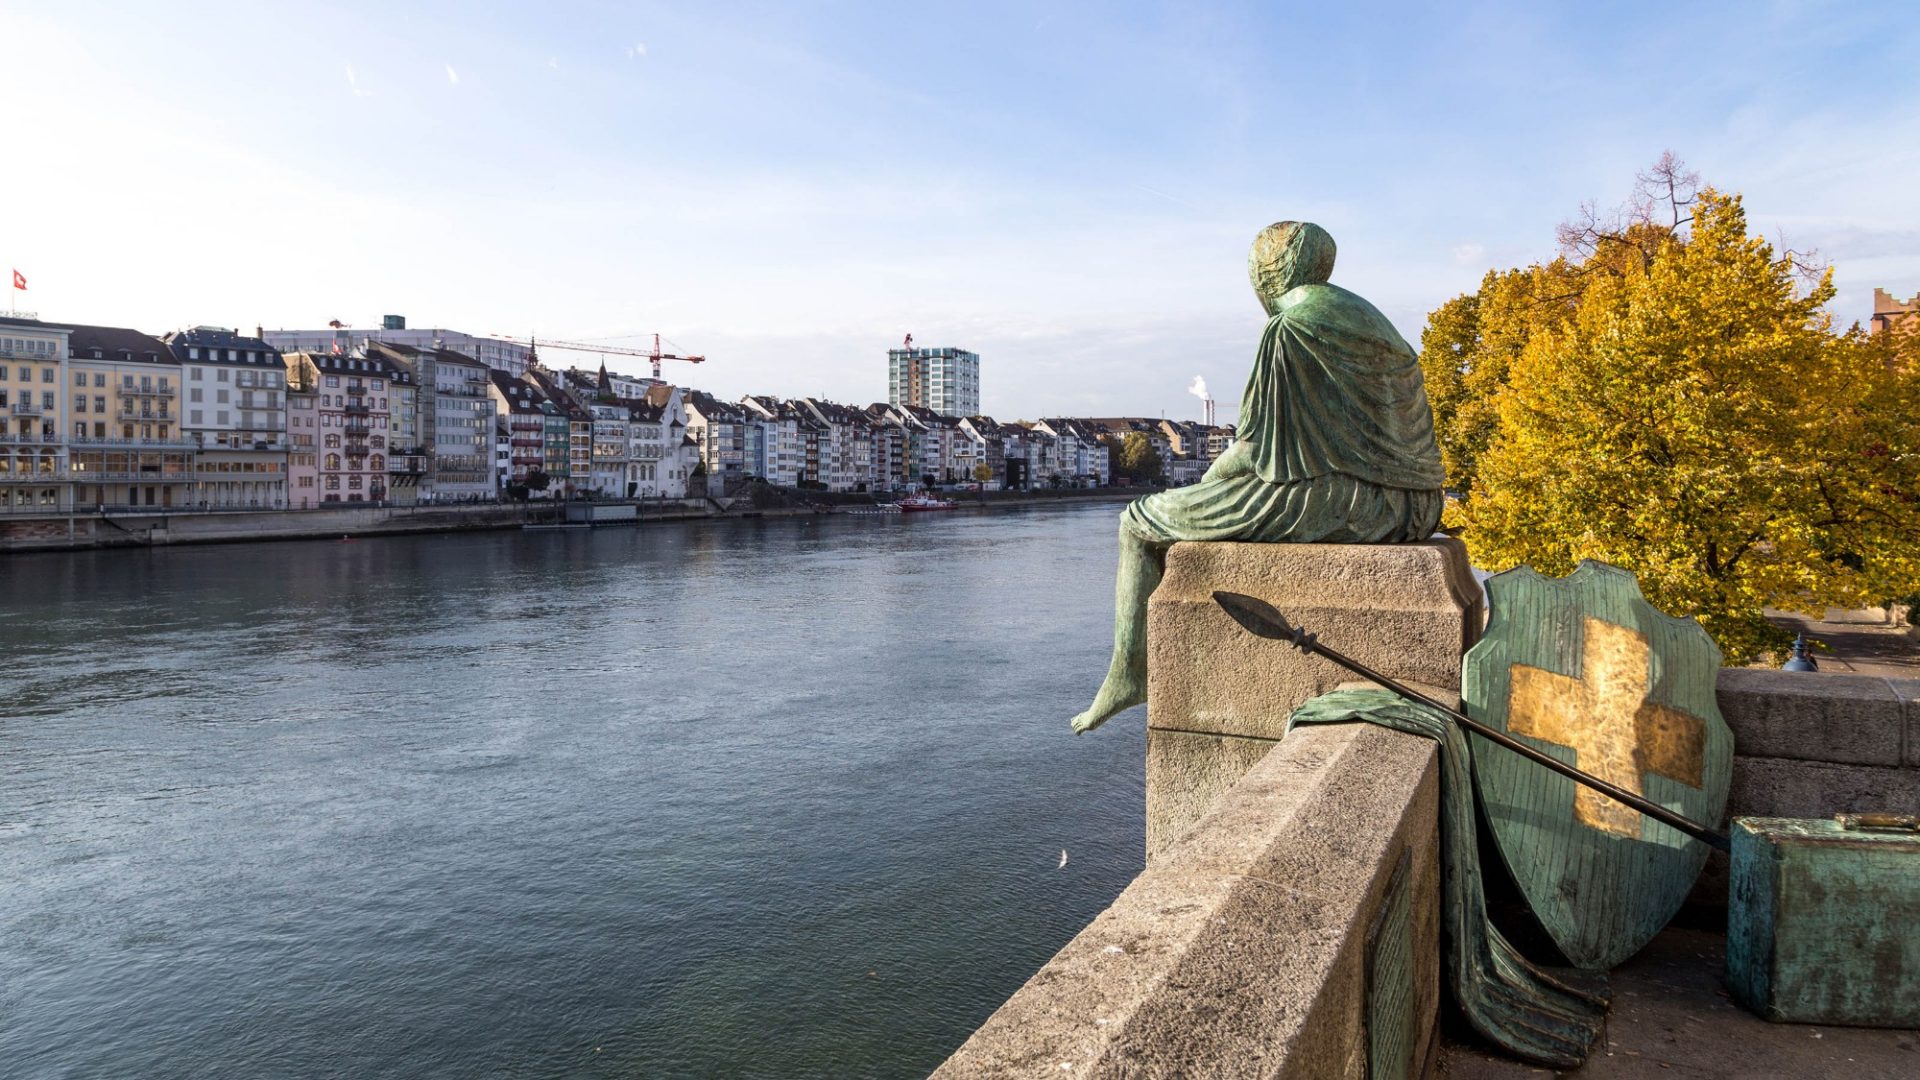 Die Helvetia-Statue »Helvetia auf Reisen« der Künstlerin Bettina Eichin am Rhein. Die Statue repräsentiert die weibliche Personifikation der Schweiz.